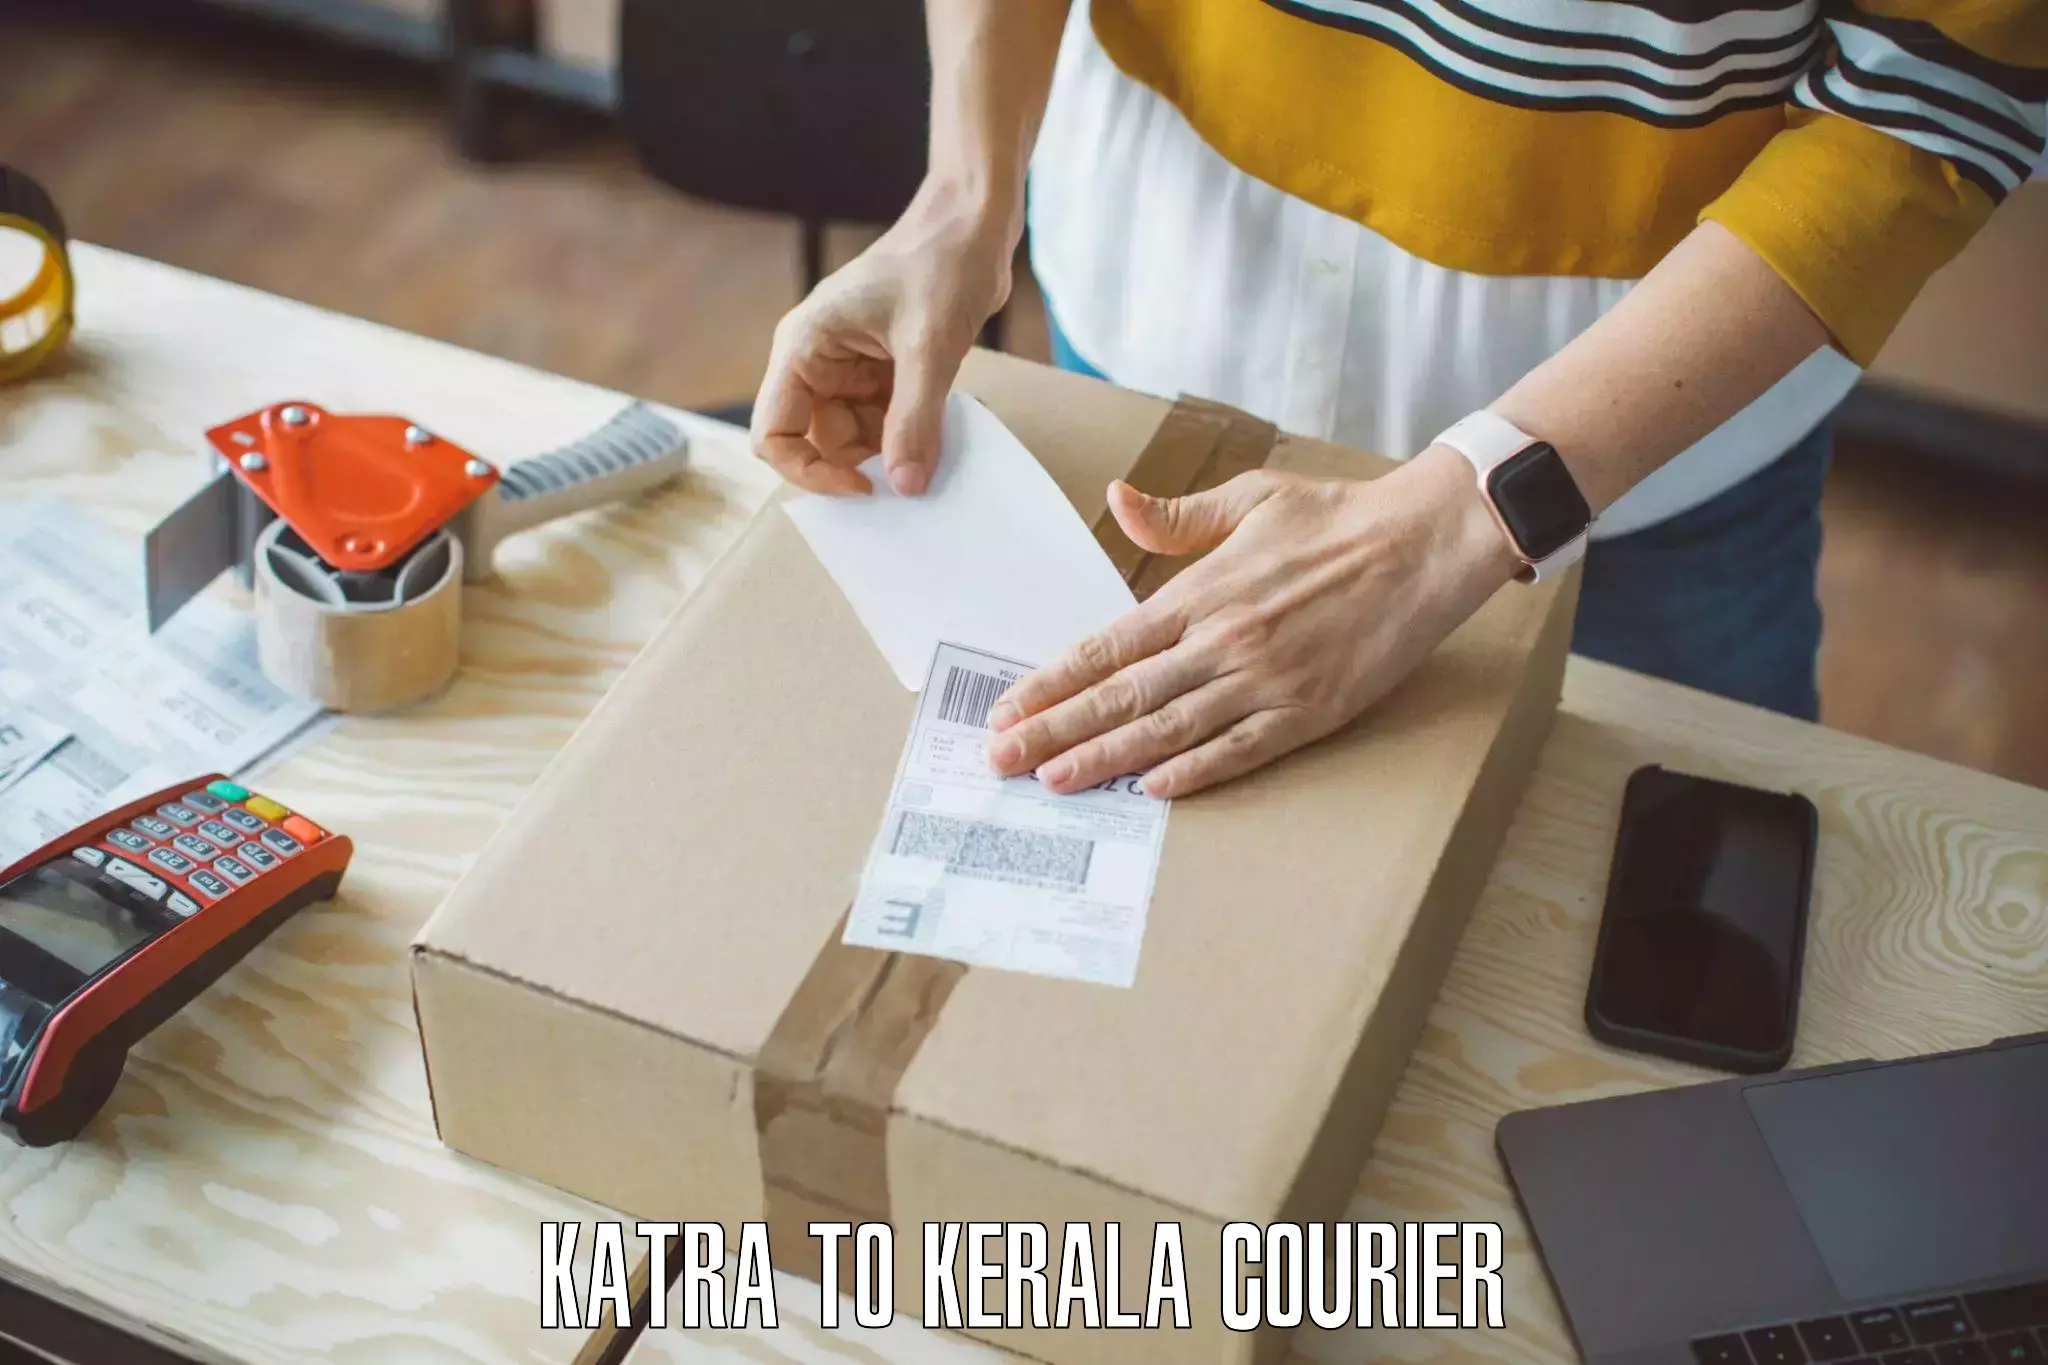 Furniture handling services Katra to Mavelikara